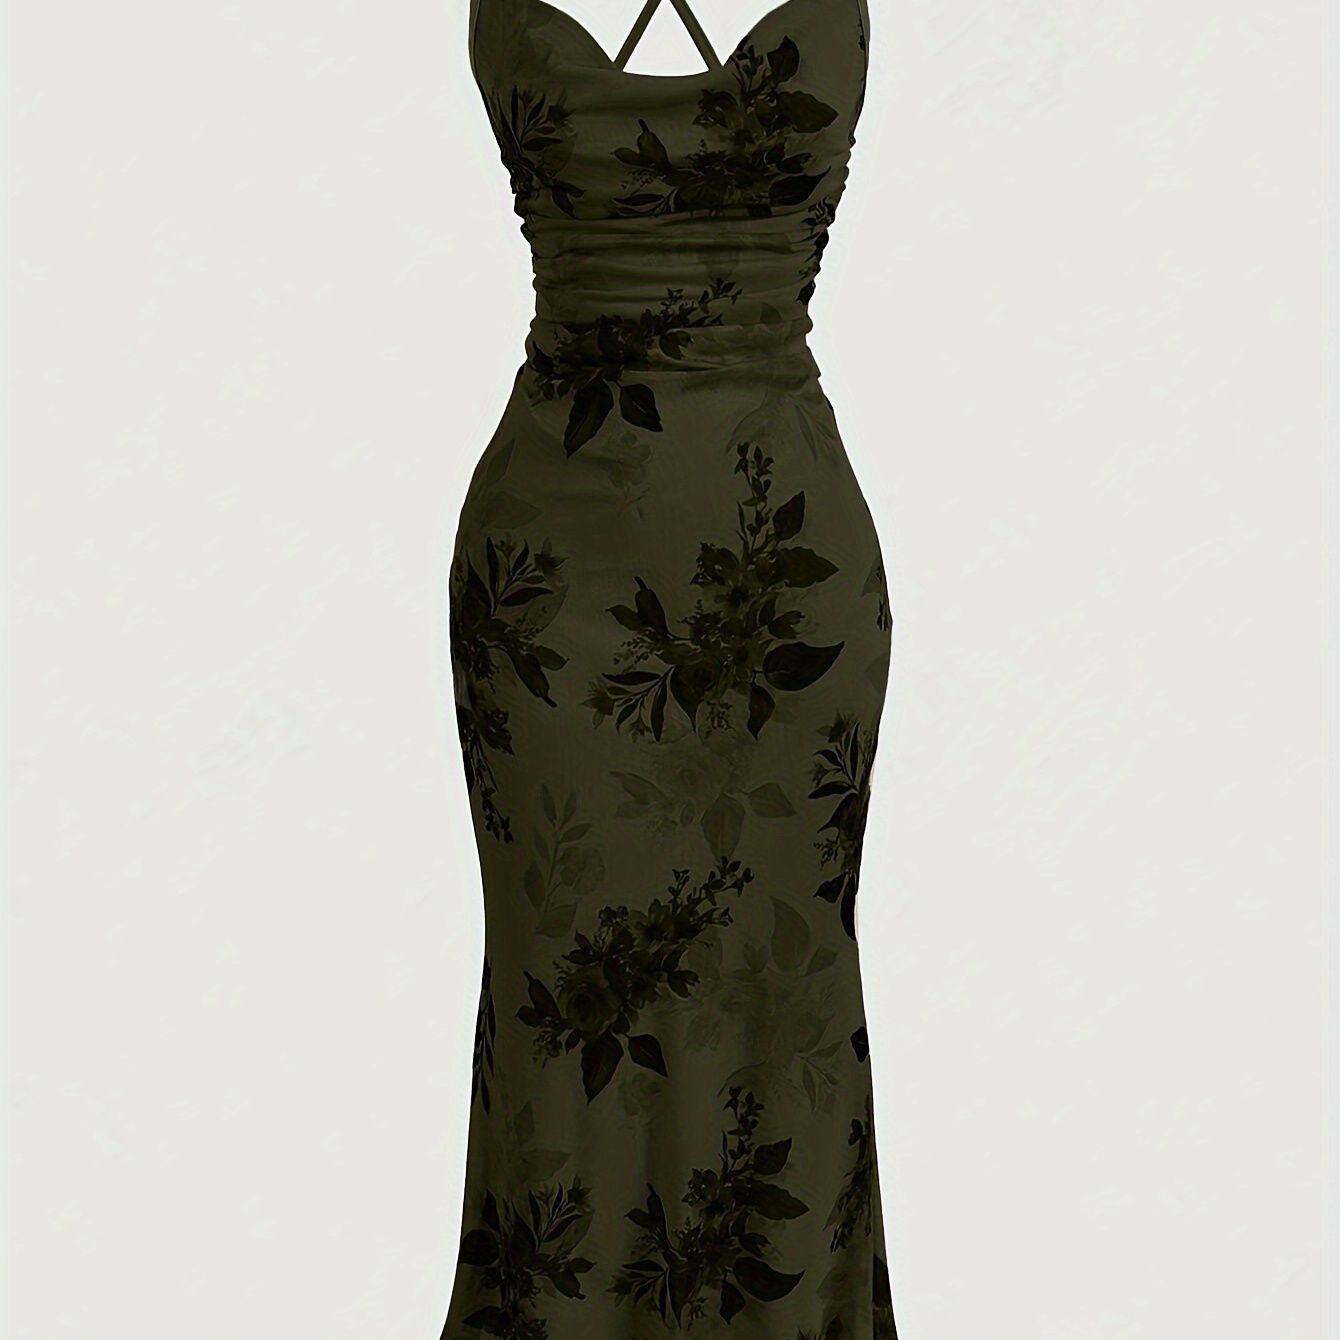 

Floral Print Crisscross Cami Dress, Elegant Sleeveless Spaghetti Strap Dress For Spring & Summer, Women's Clothing